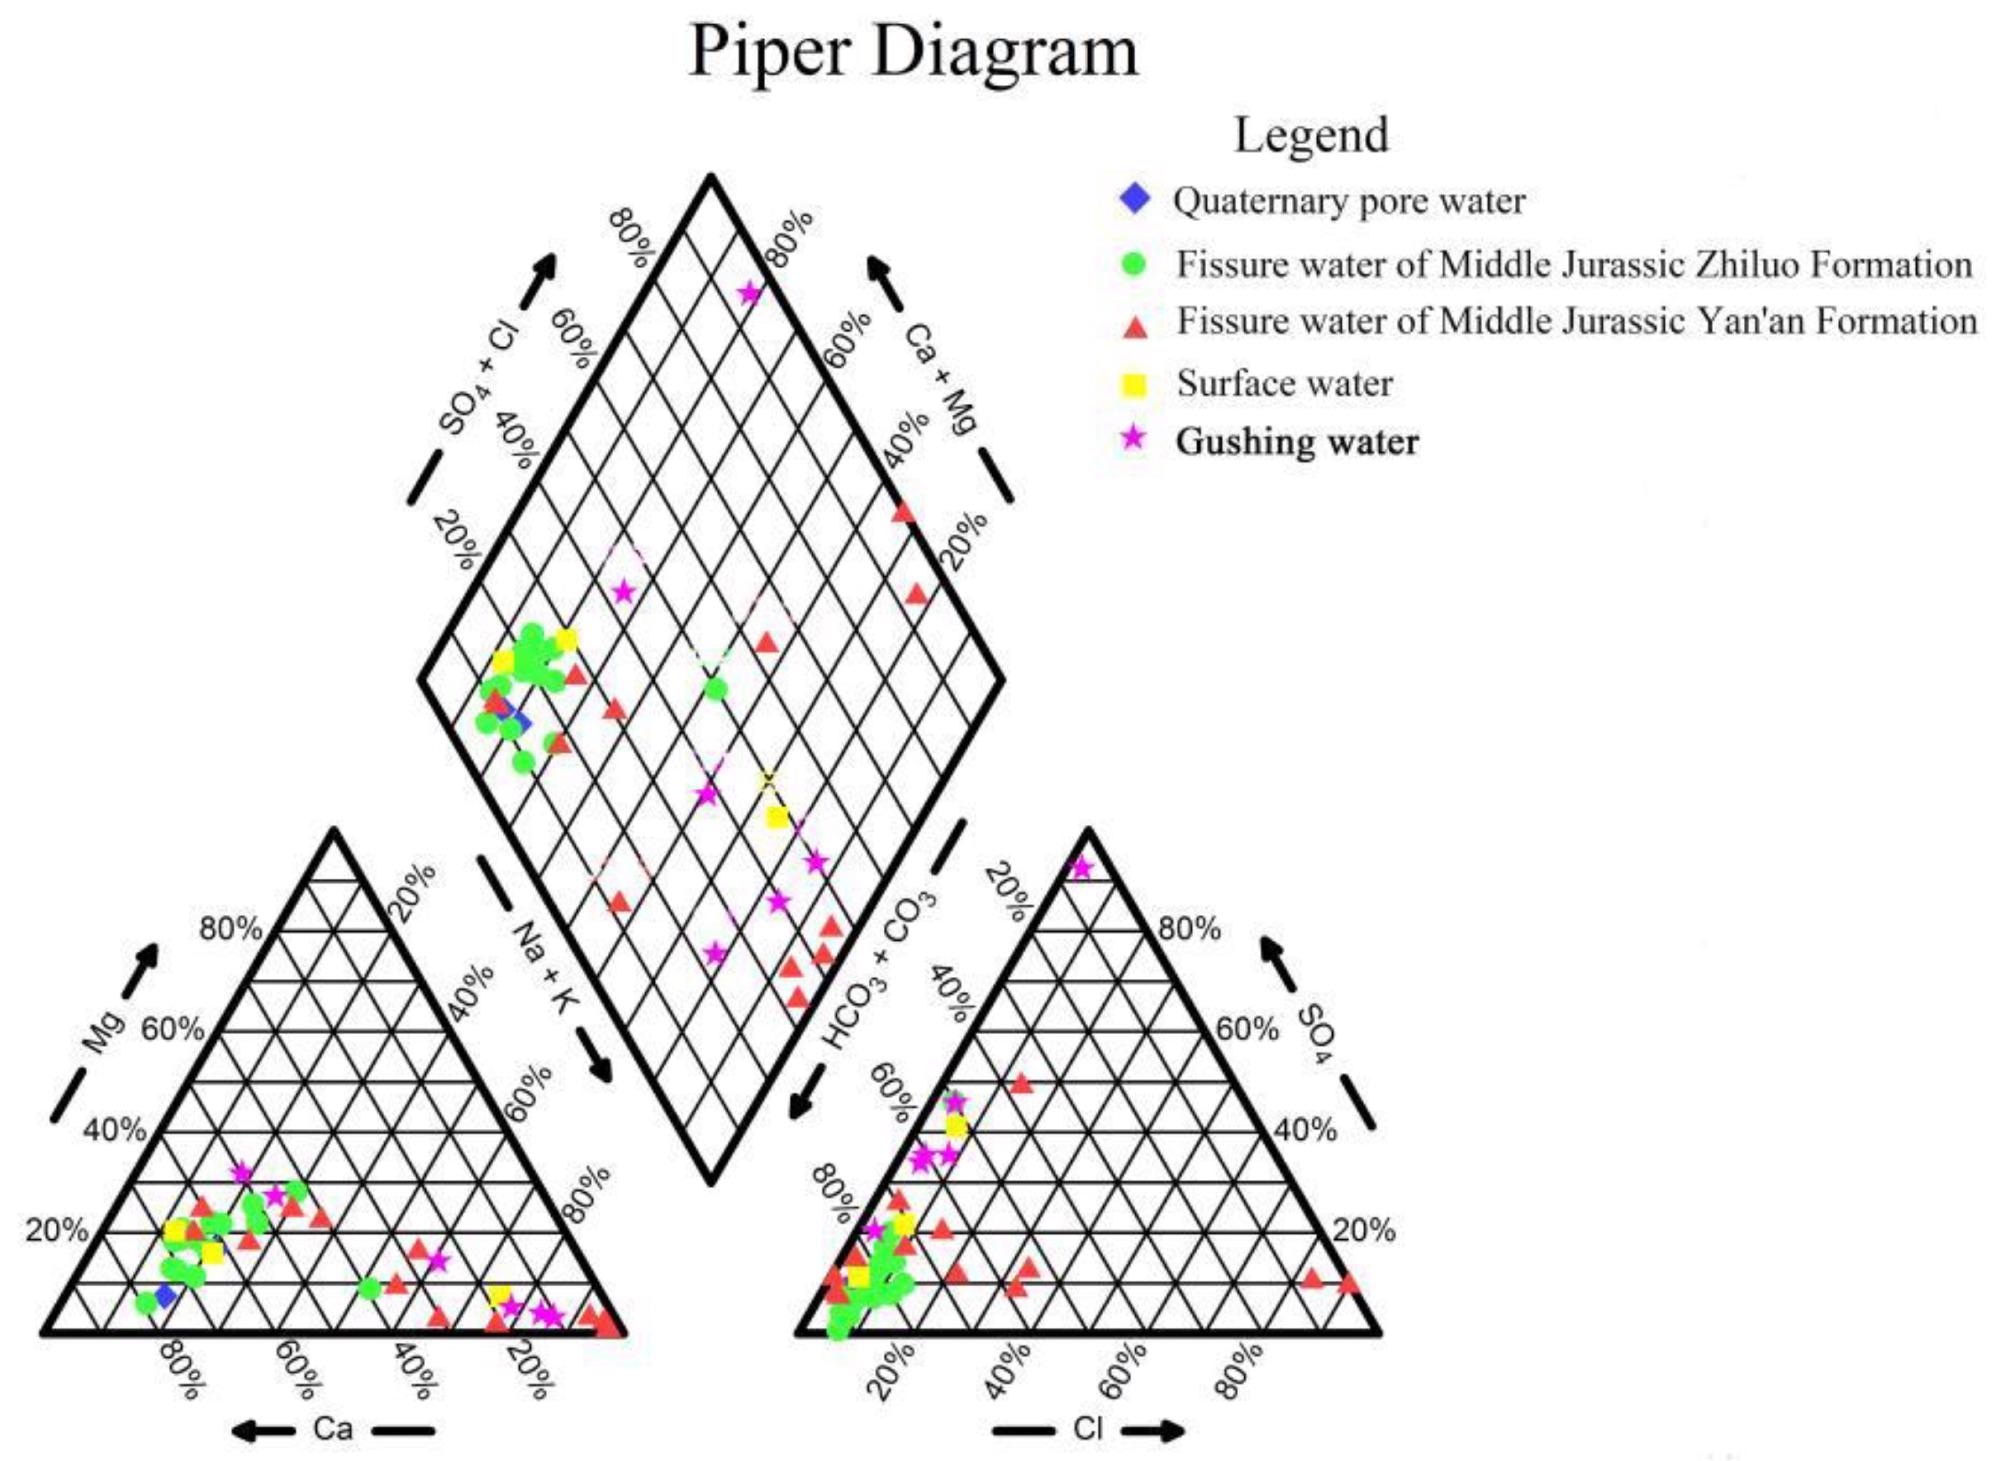 Piper trilinear diagram.